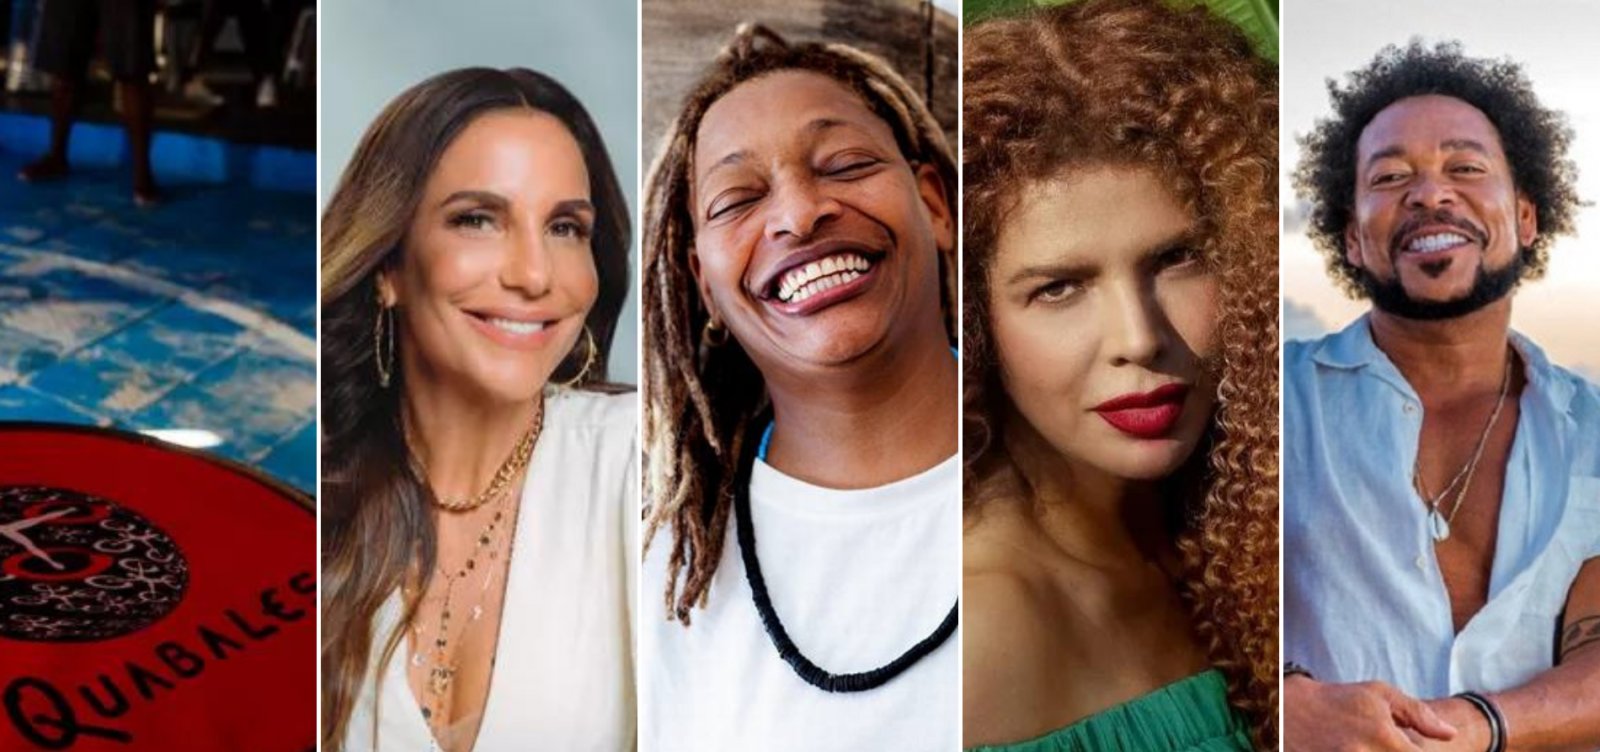 Quabales e Ivete por R$1, Mart'nália, Vanessa da Mata e Jau: confira a agenda cultural deste final de semana